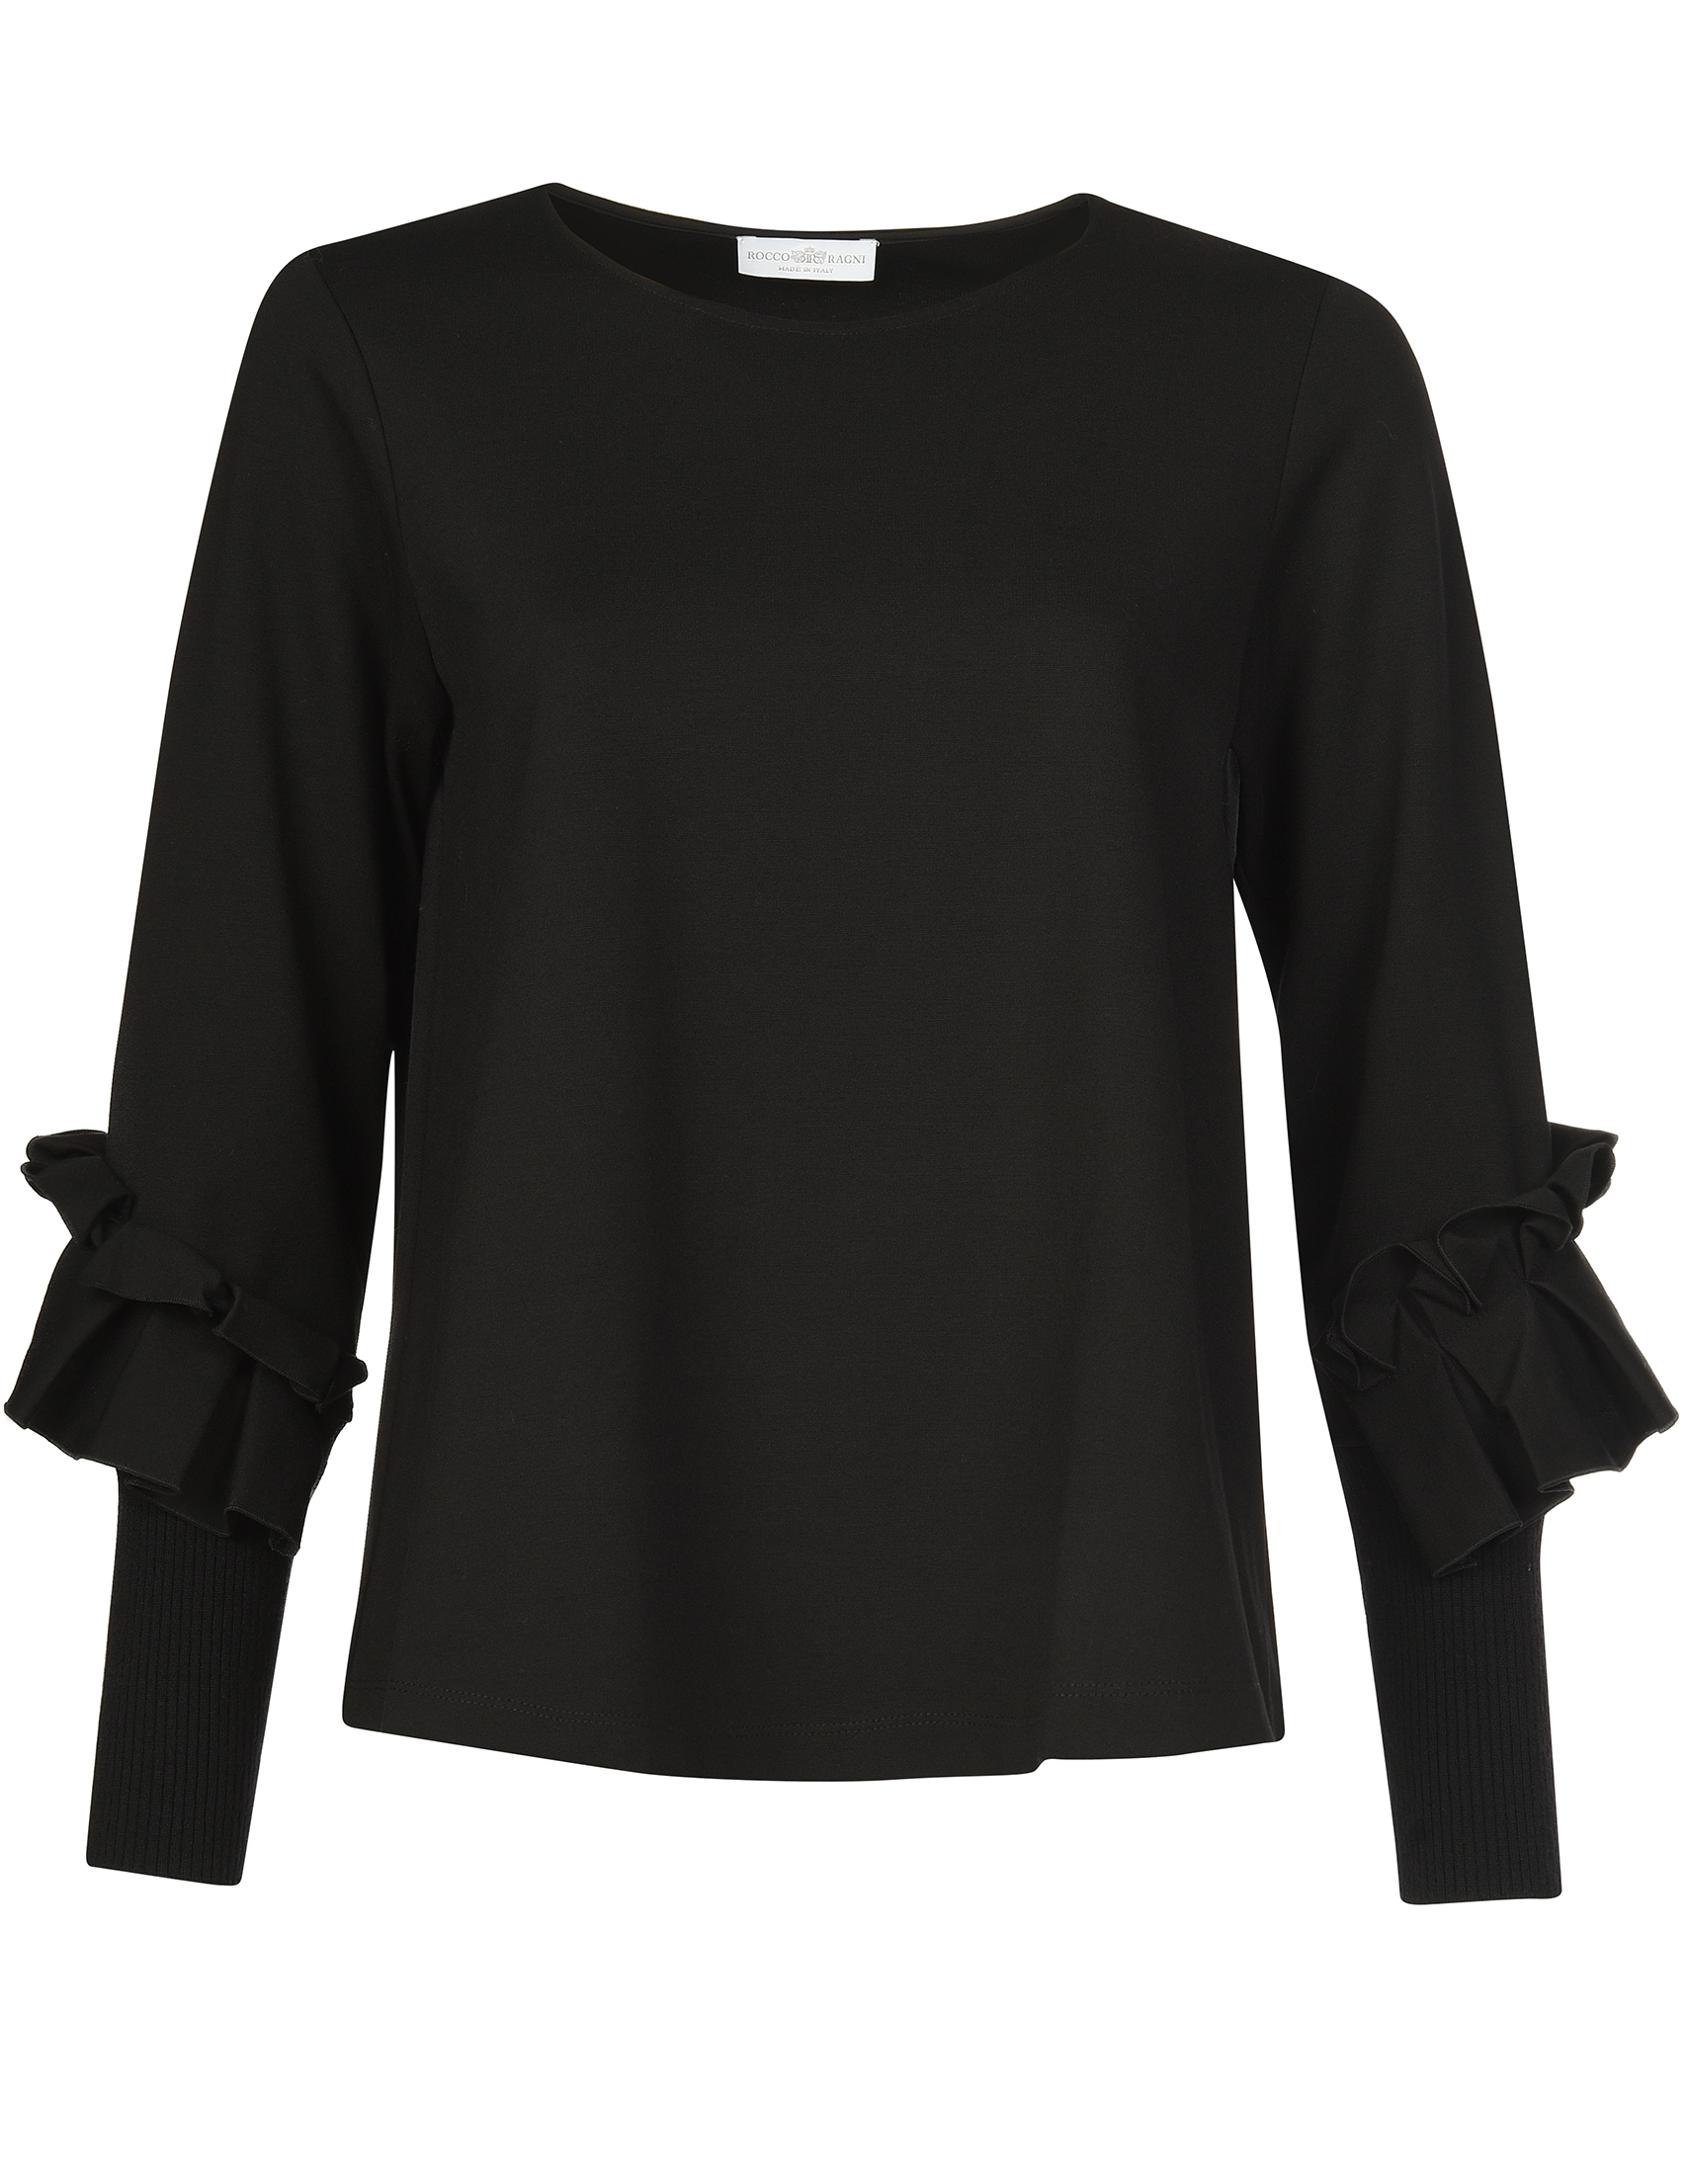 Женская блуза ROCCO RAGNI 18-1100-1135_black